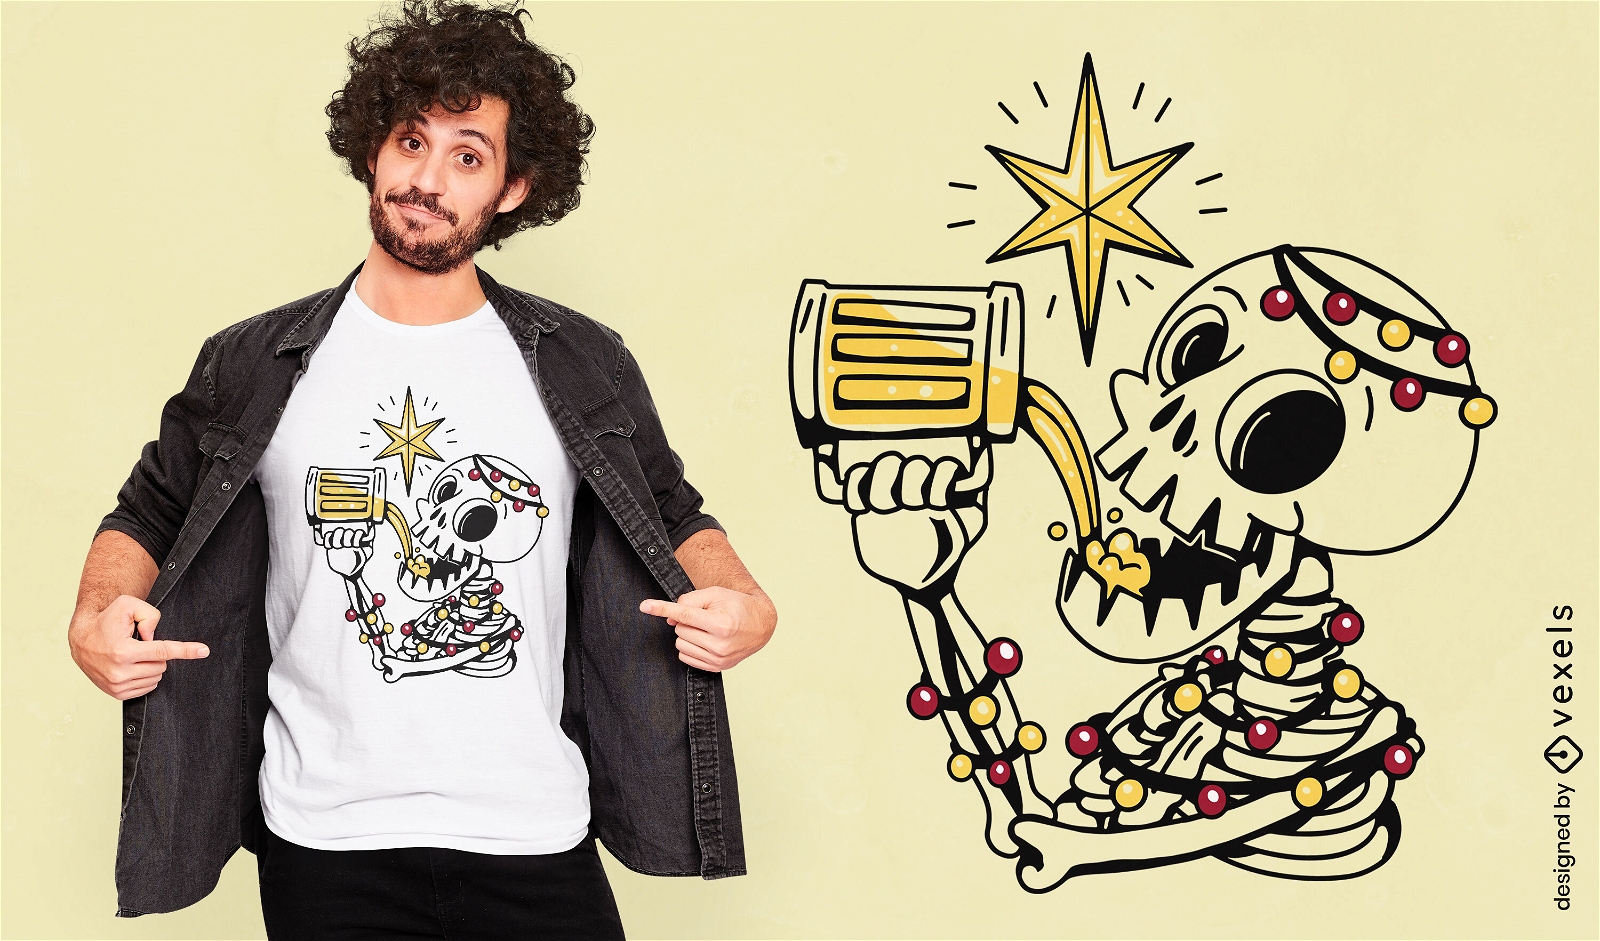 Dise?o de camiseta de esqueleto de navidad bebiendo cerveza.